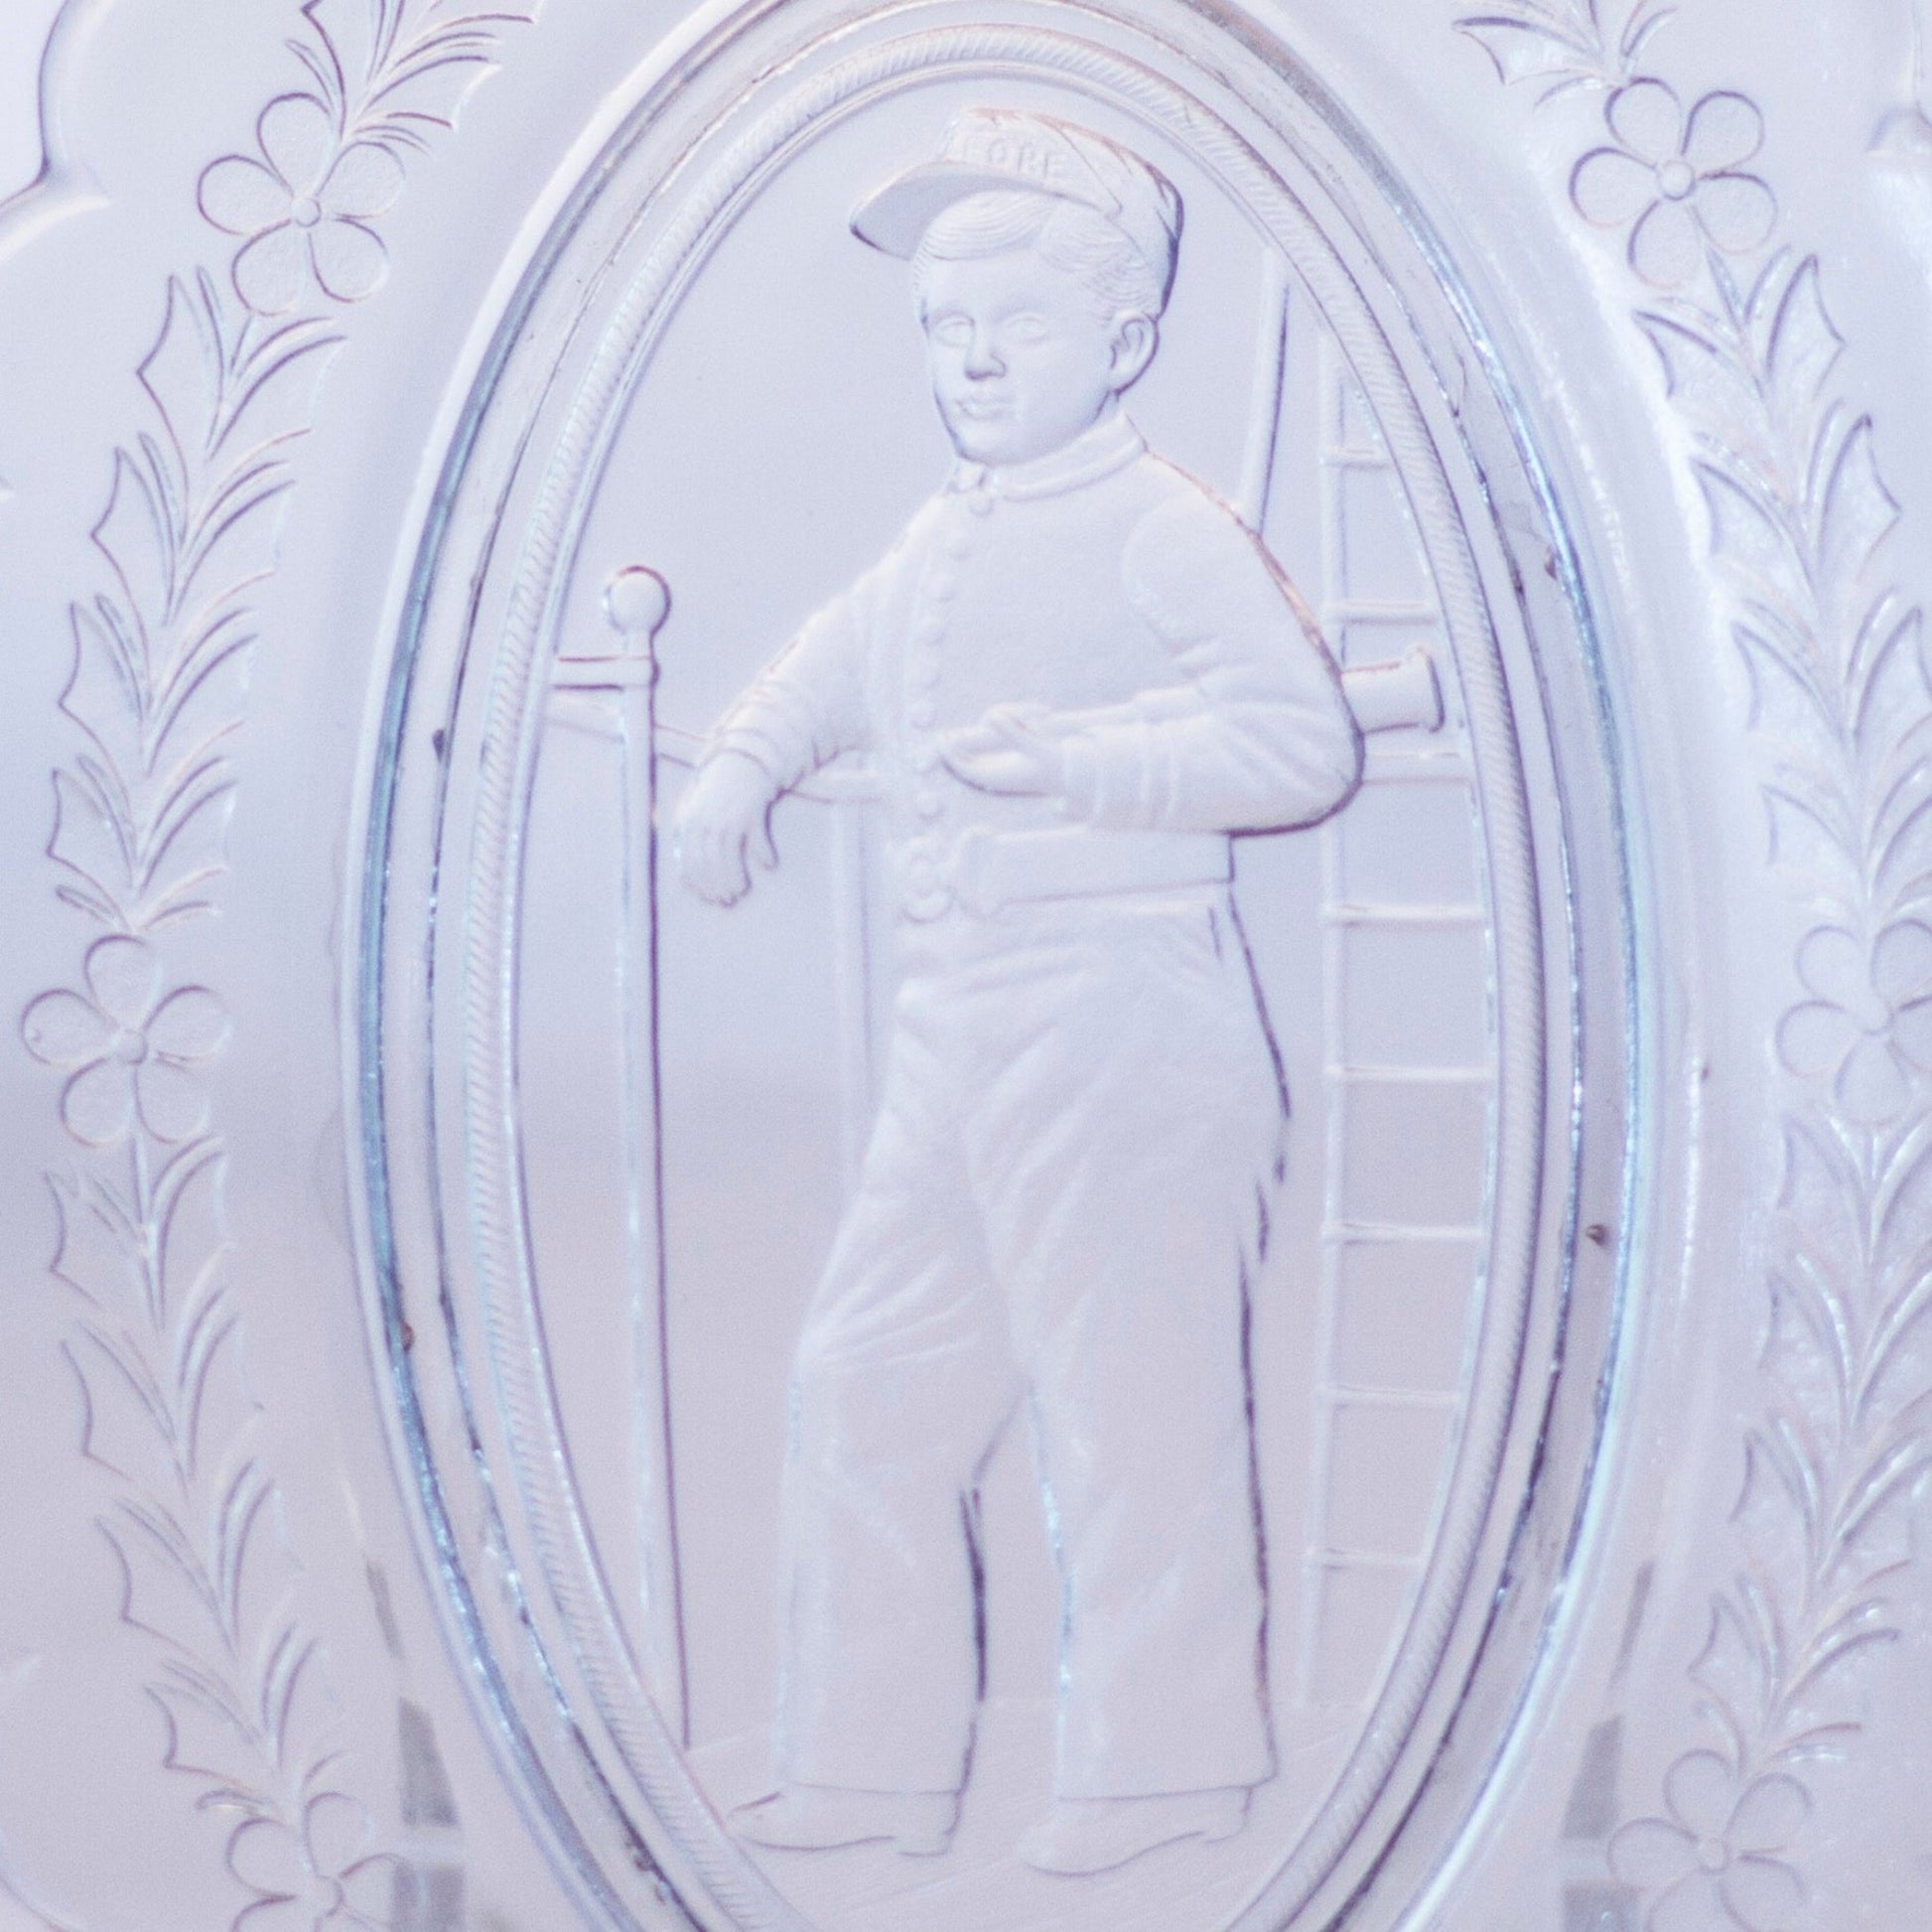 H.M.S. PINAFORE OPERA SOUVENIR Oblong Glass Dish *RARE* Theatre Memorabilia Circa 1880 to 1900